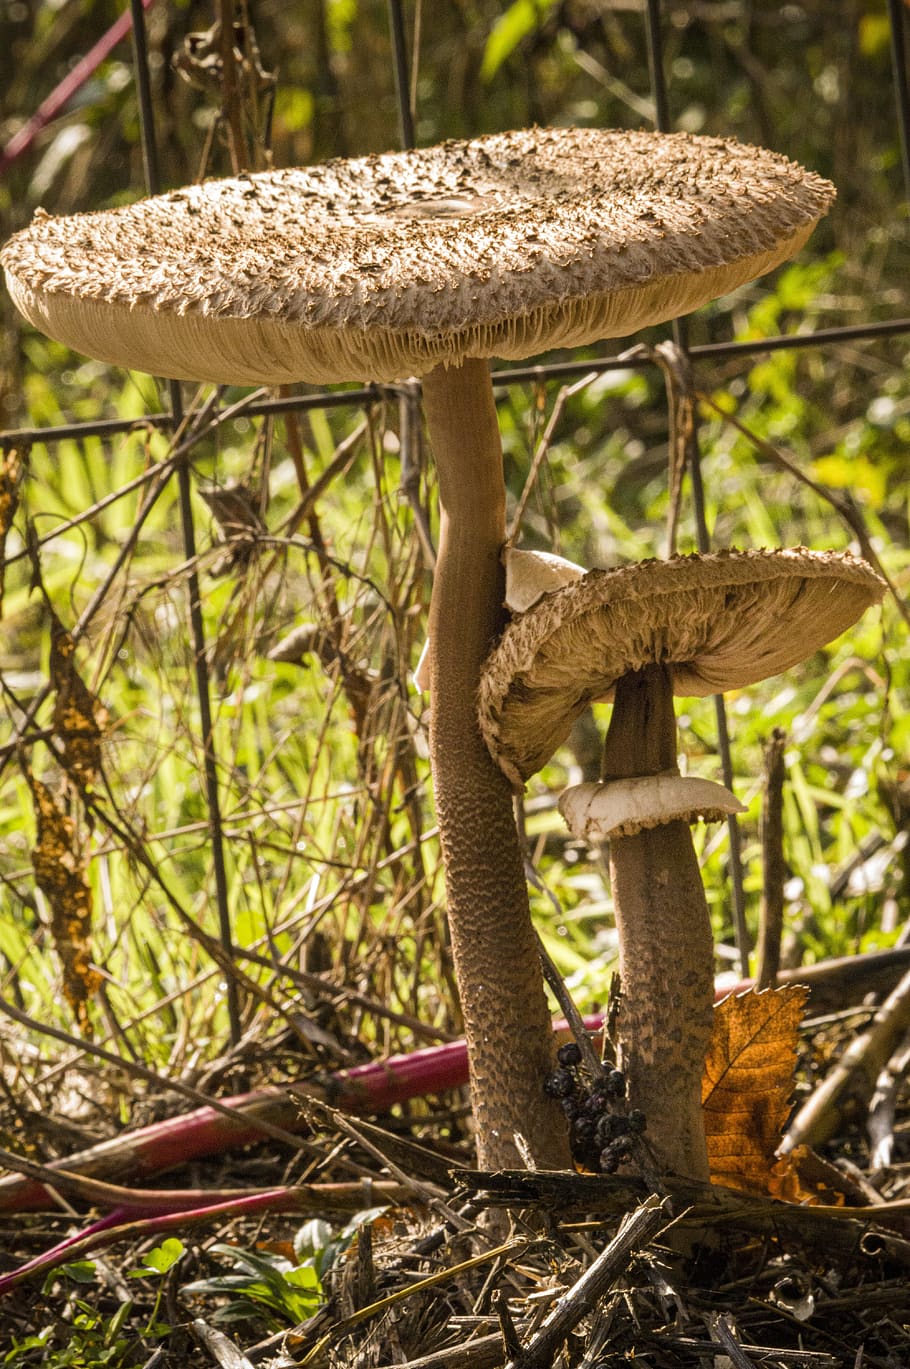 mushrooms, drum sticks, collect, forest, underwood, autumn, mushroom, fungus, vegetable, plant